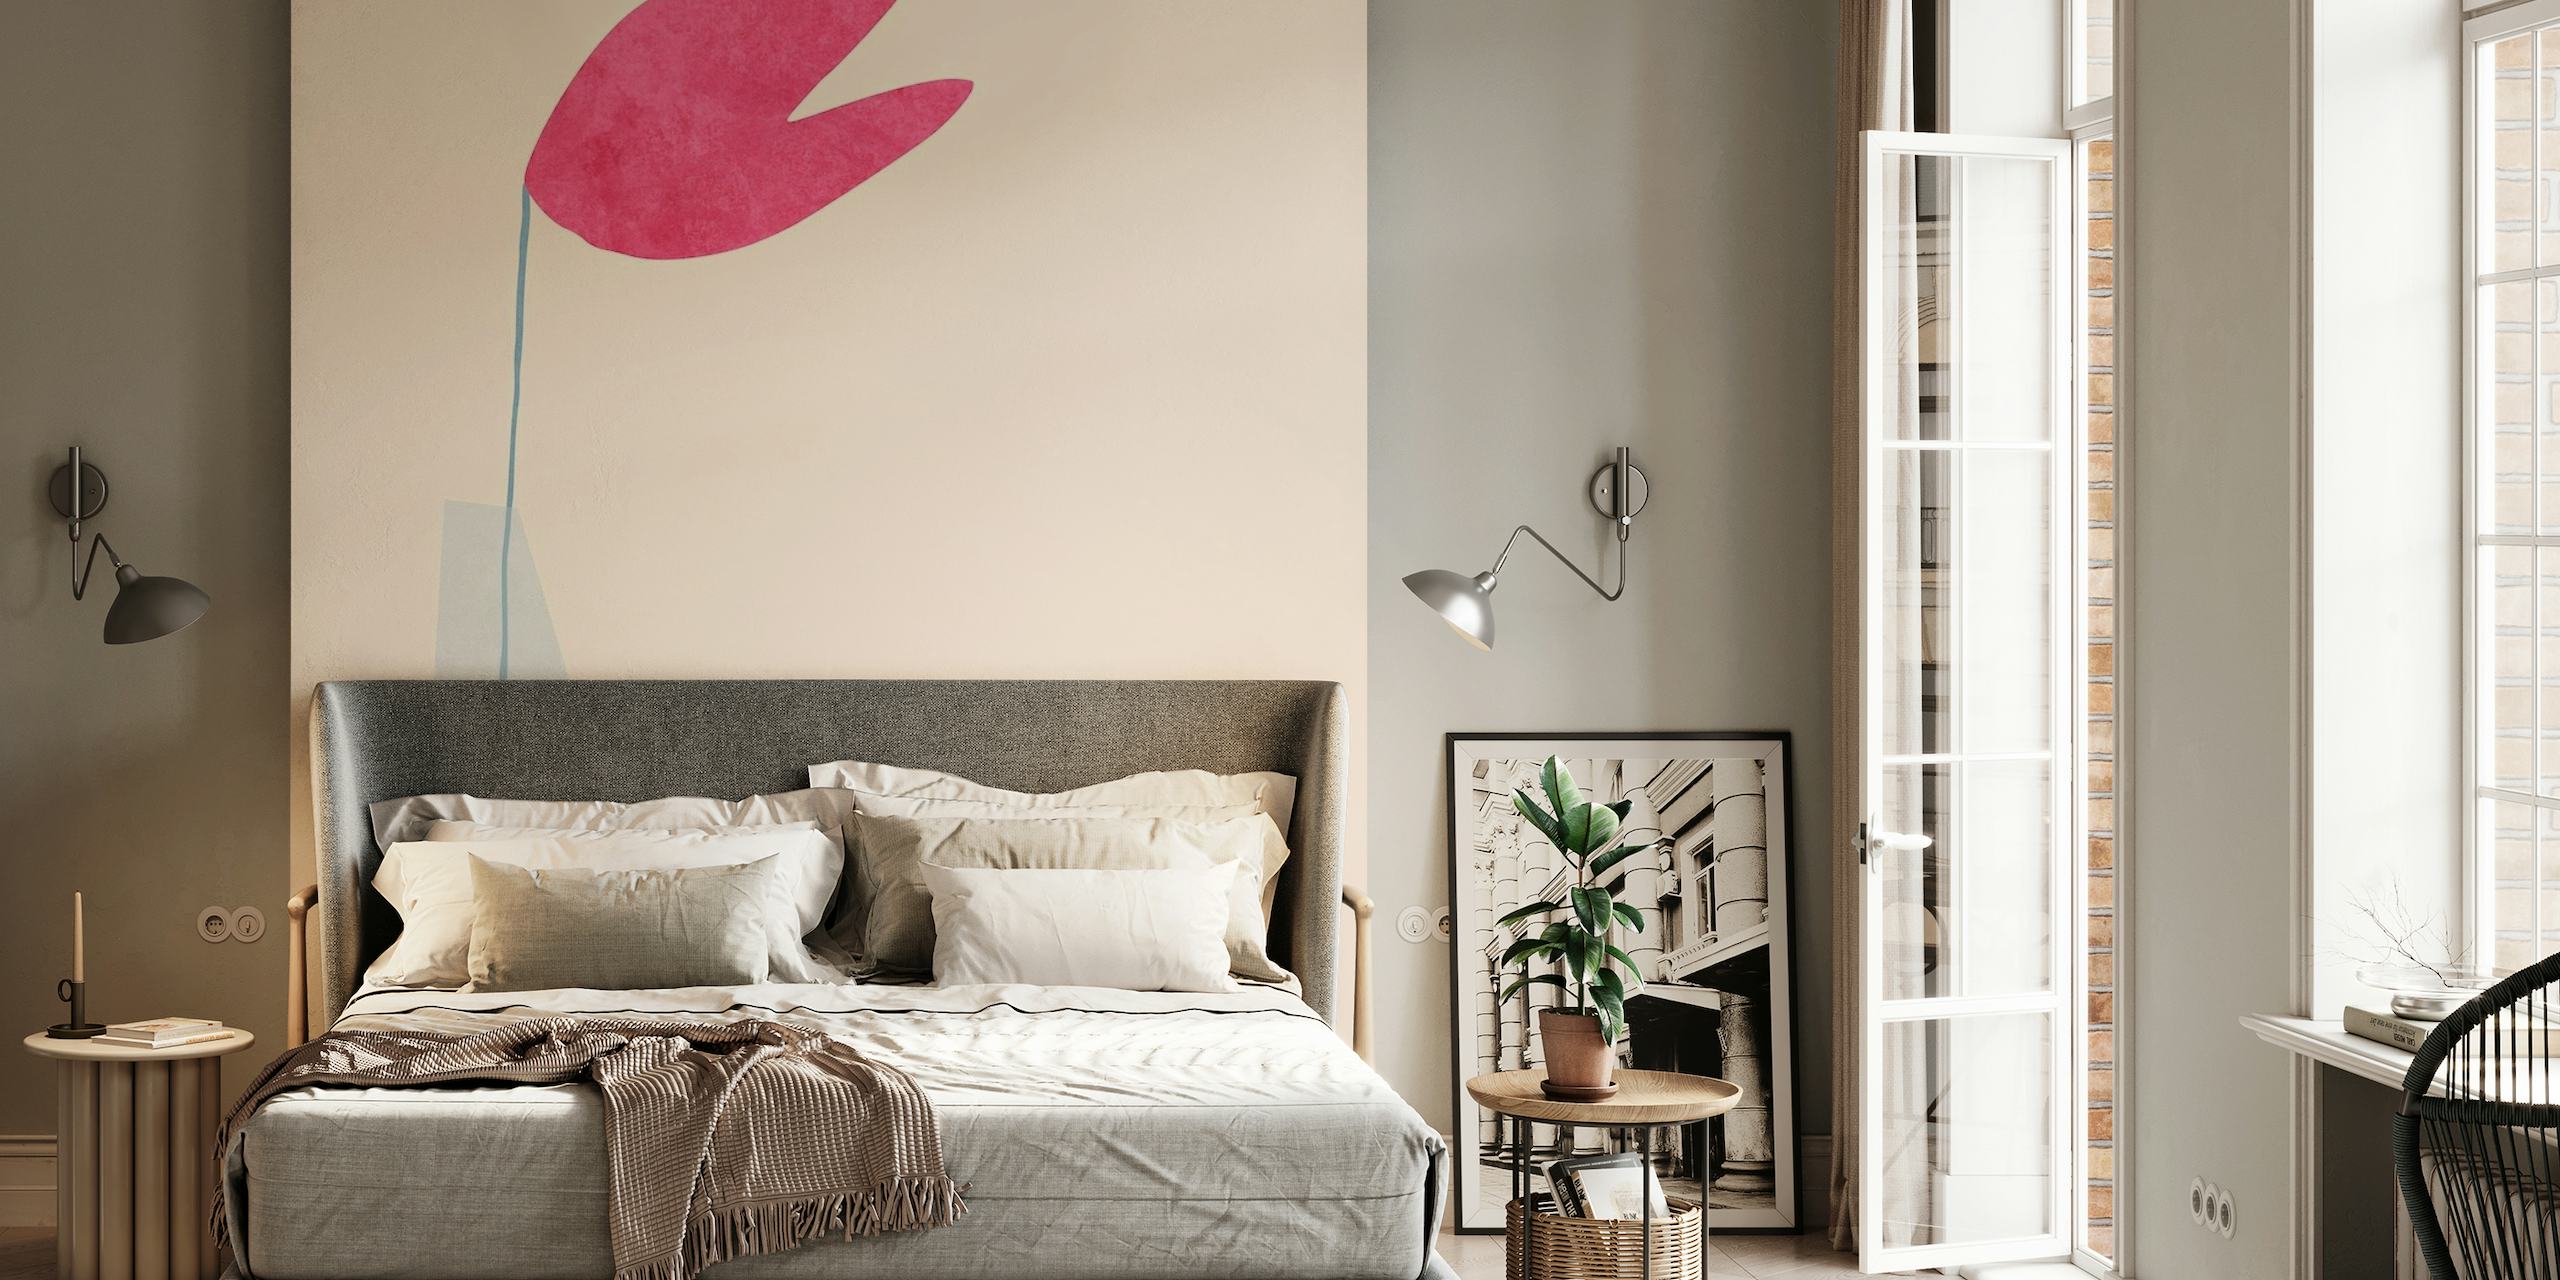 Abstract minimalistisch fotobehang van een roze hartvorm, balancerend op een slanke vorm met een pastelkleurige achtergrond